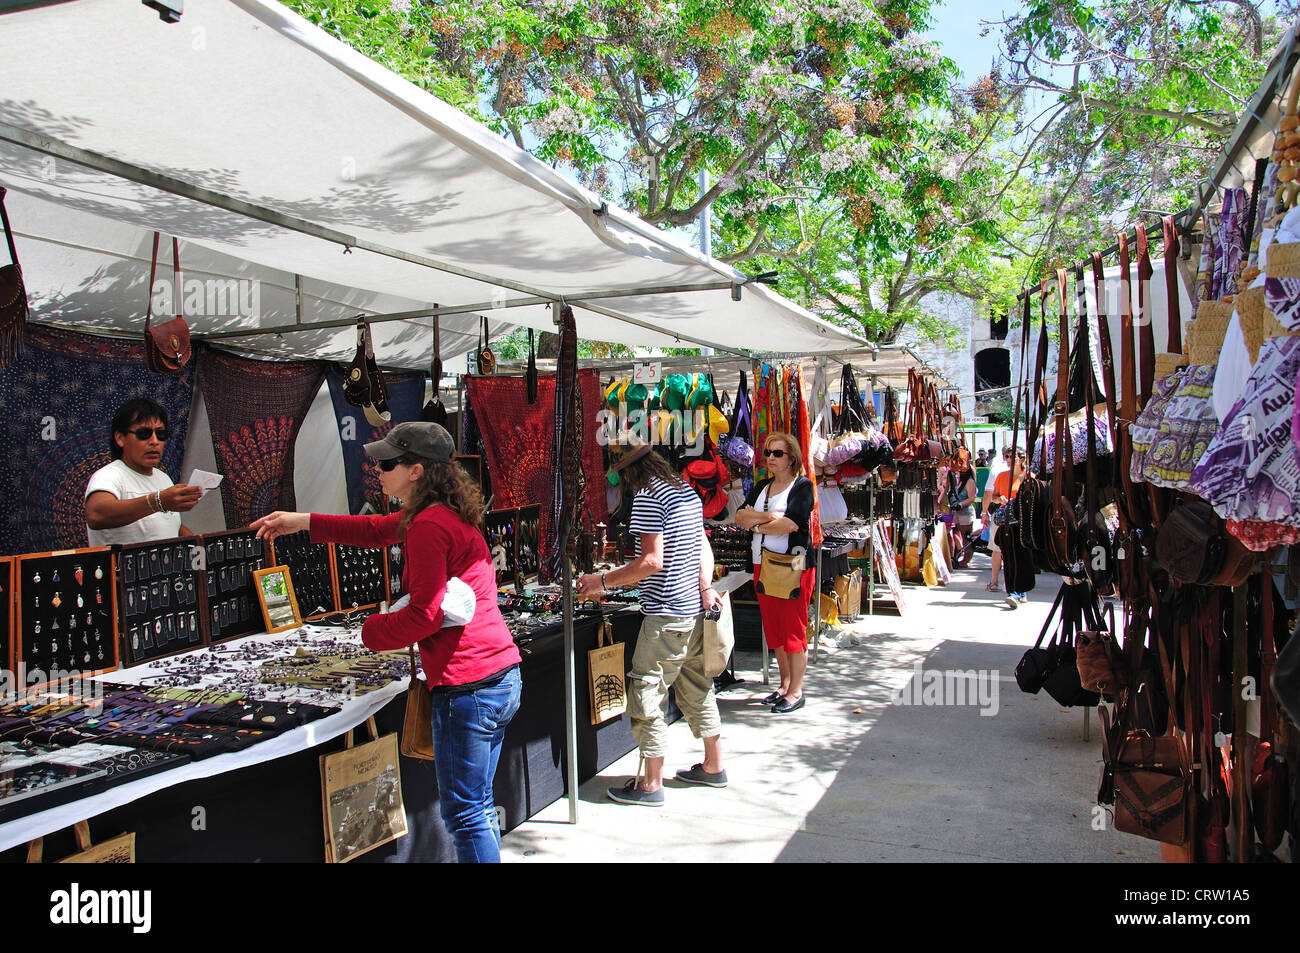 Open-air sabato mercato di artigianato, Plaza Explanada, Mahon Minorca, Isole Baleari, Spagna Foto Stock